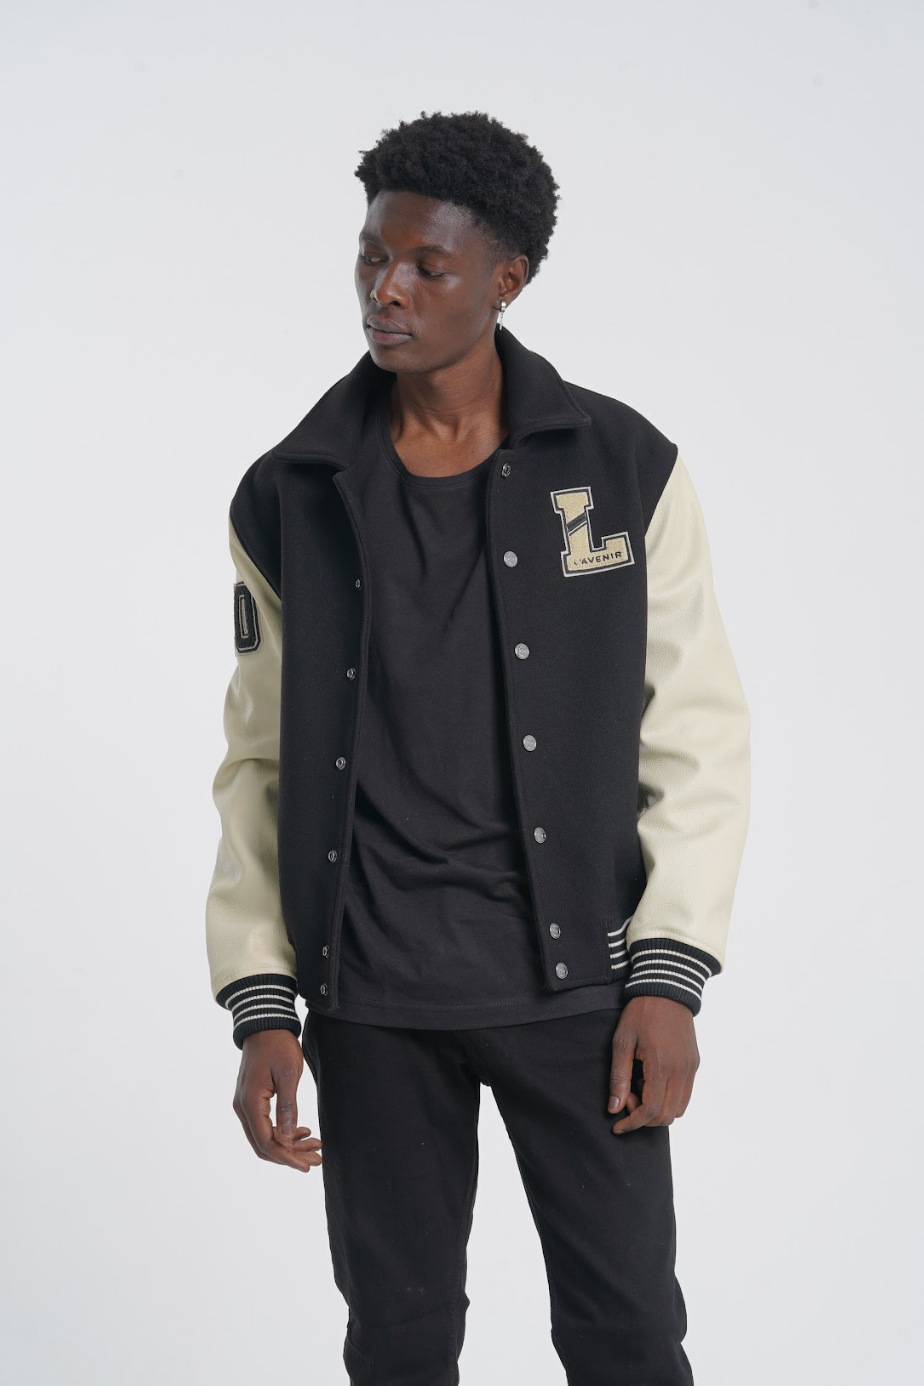 Off-White Leather Varsity Jacket